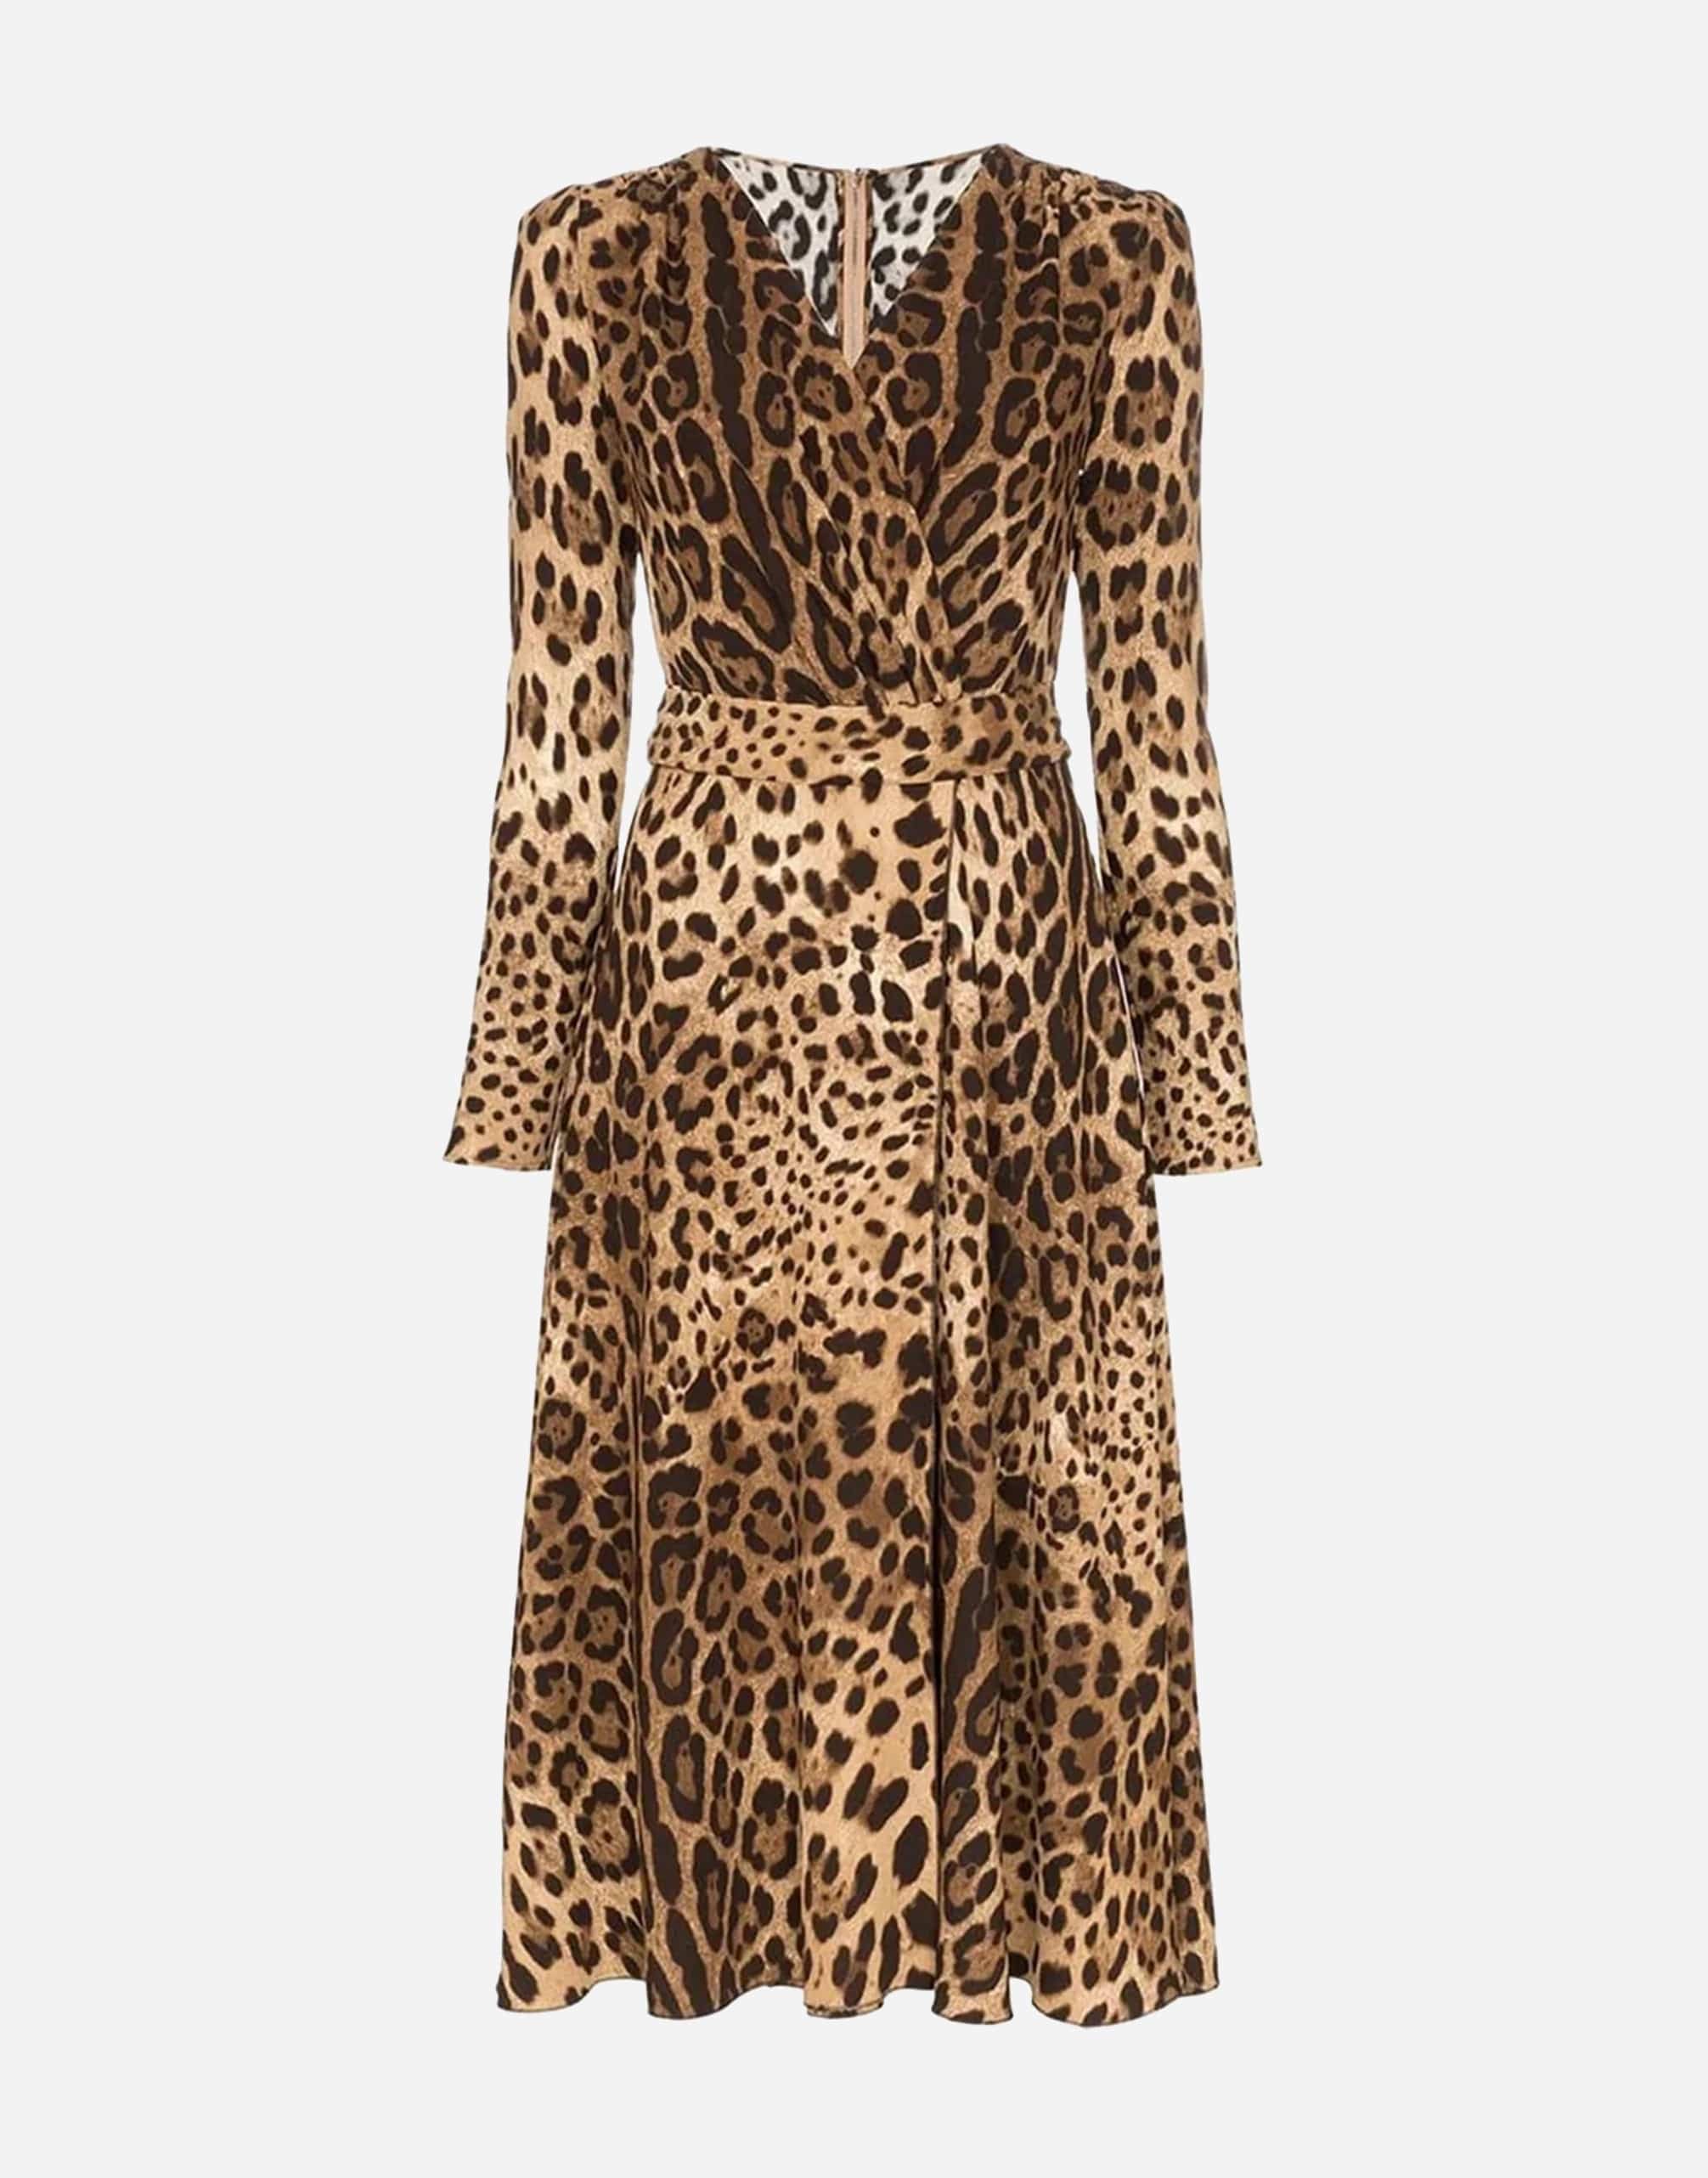 Leopard Print Flared Dress